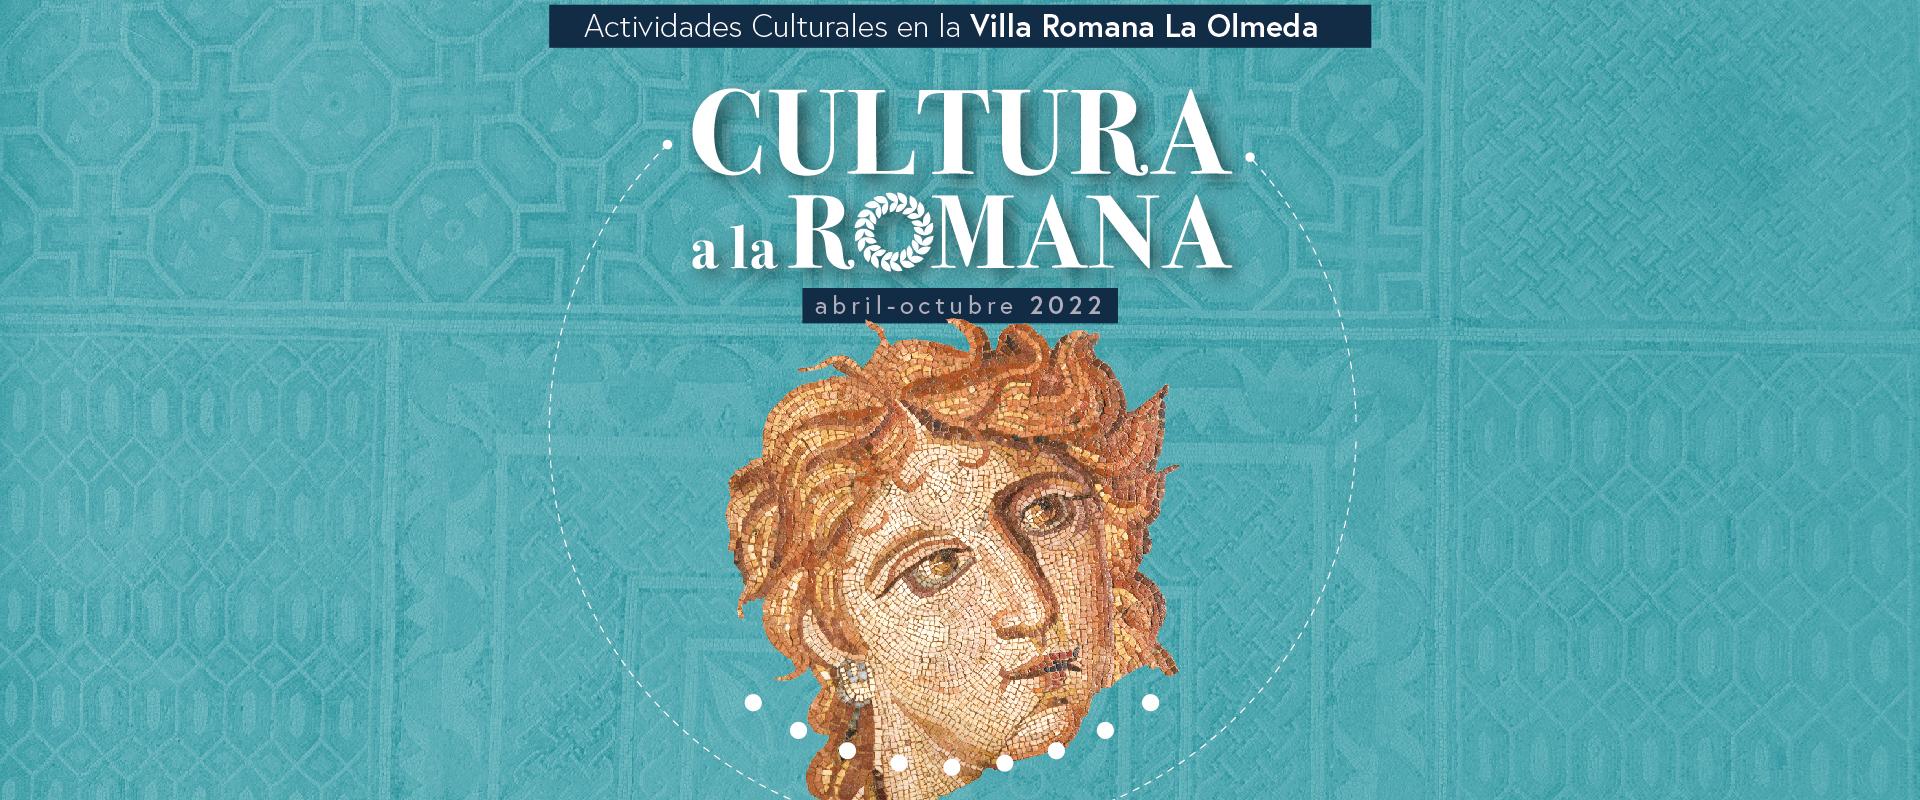 cultura a la romana programa de actividades talleres y eventos diversos en La Olmeda y su museo de abril a octubre